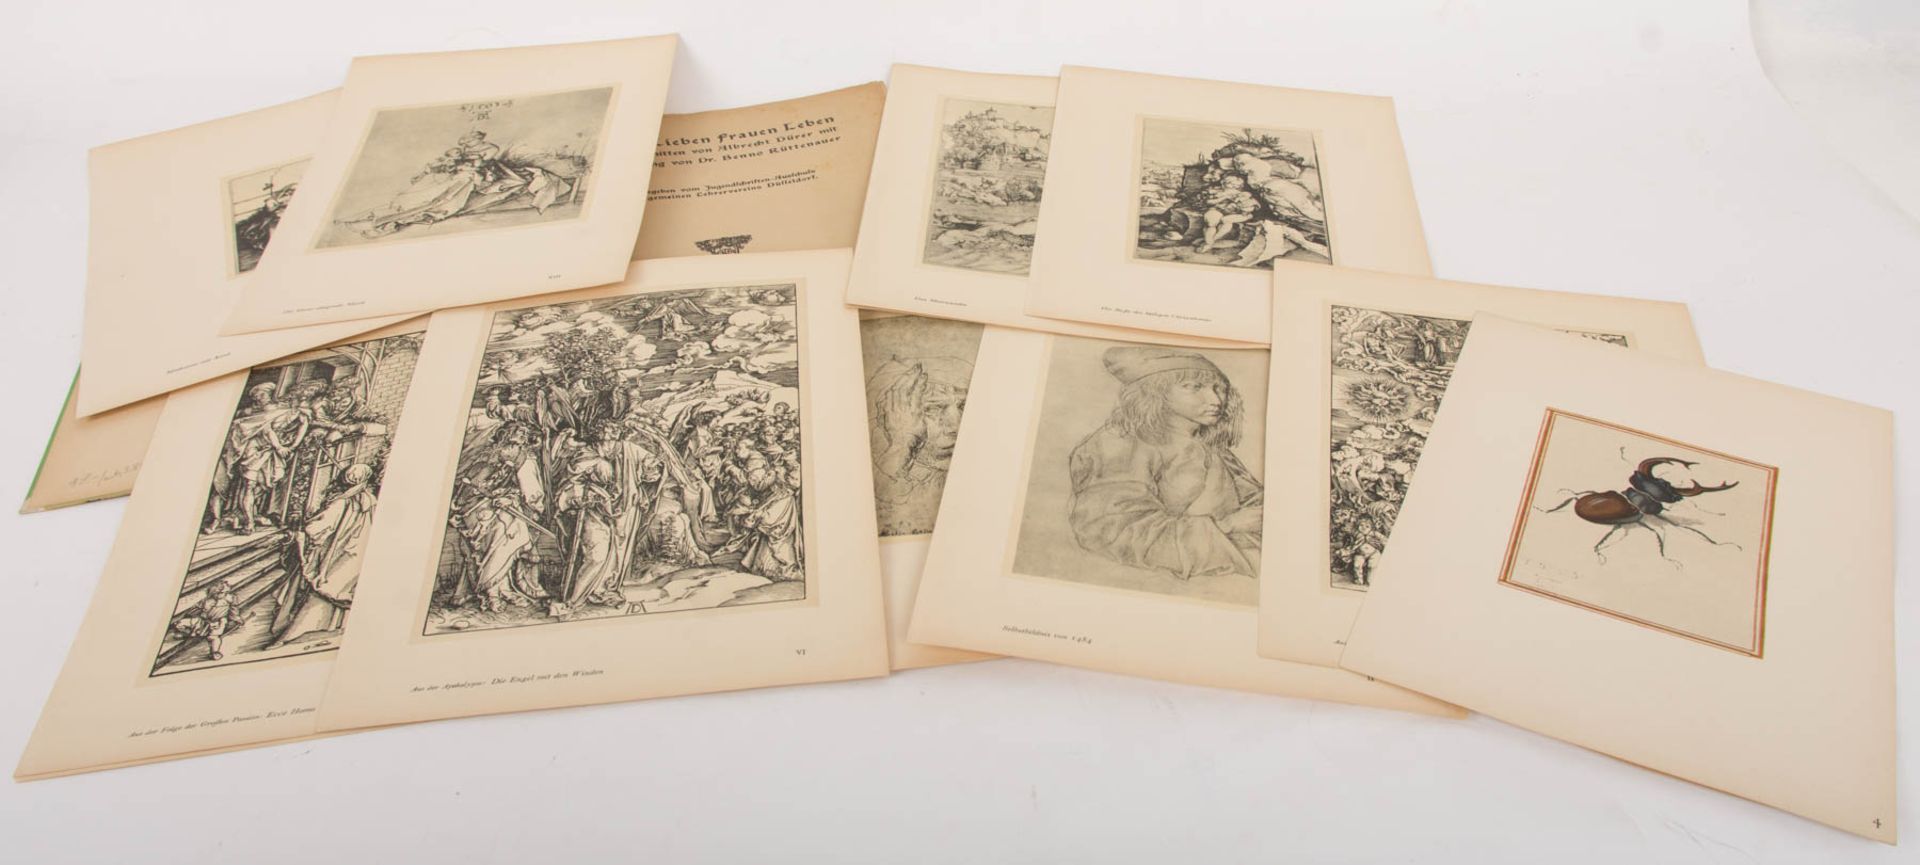 Konvolut von dreizehn Faksimile-Druckplatten zu "Die große Passion" von Albrecht Dürer, wohl Zinkätz - Bild 29 aus 33